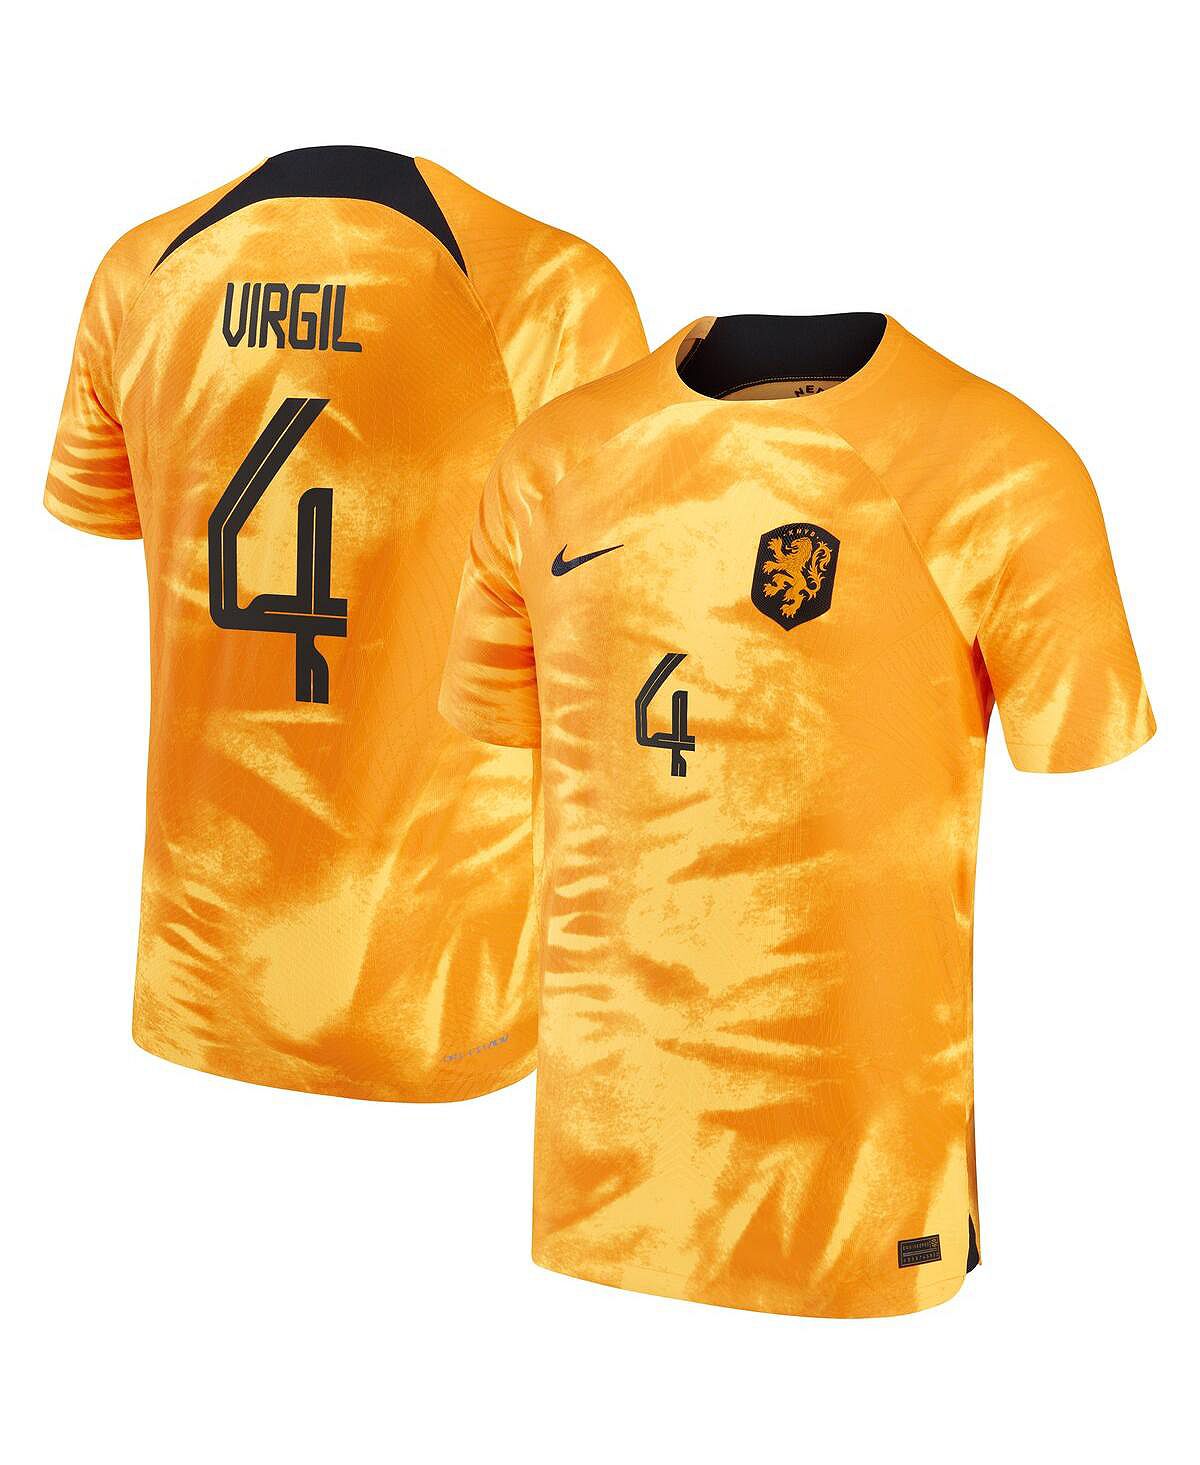 Мужская футболка virgil van dijk orange, сборная нидерландов 2022/23 home vapor match, аутентичная футболка игрока Nike пауэрбанк камень заряд бодрости на 2022 год